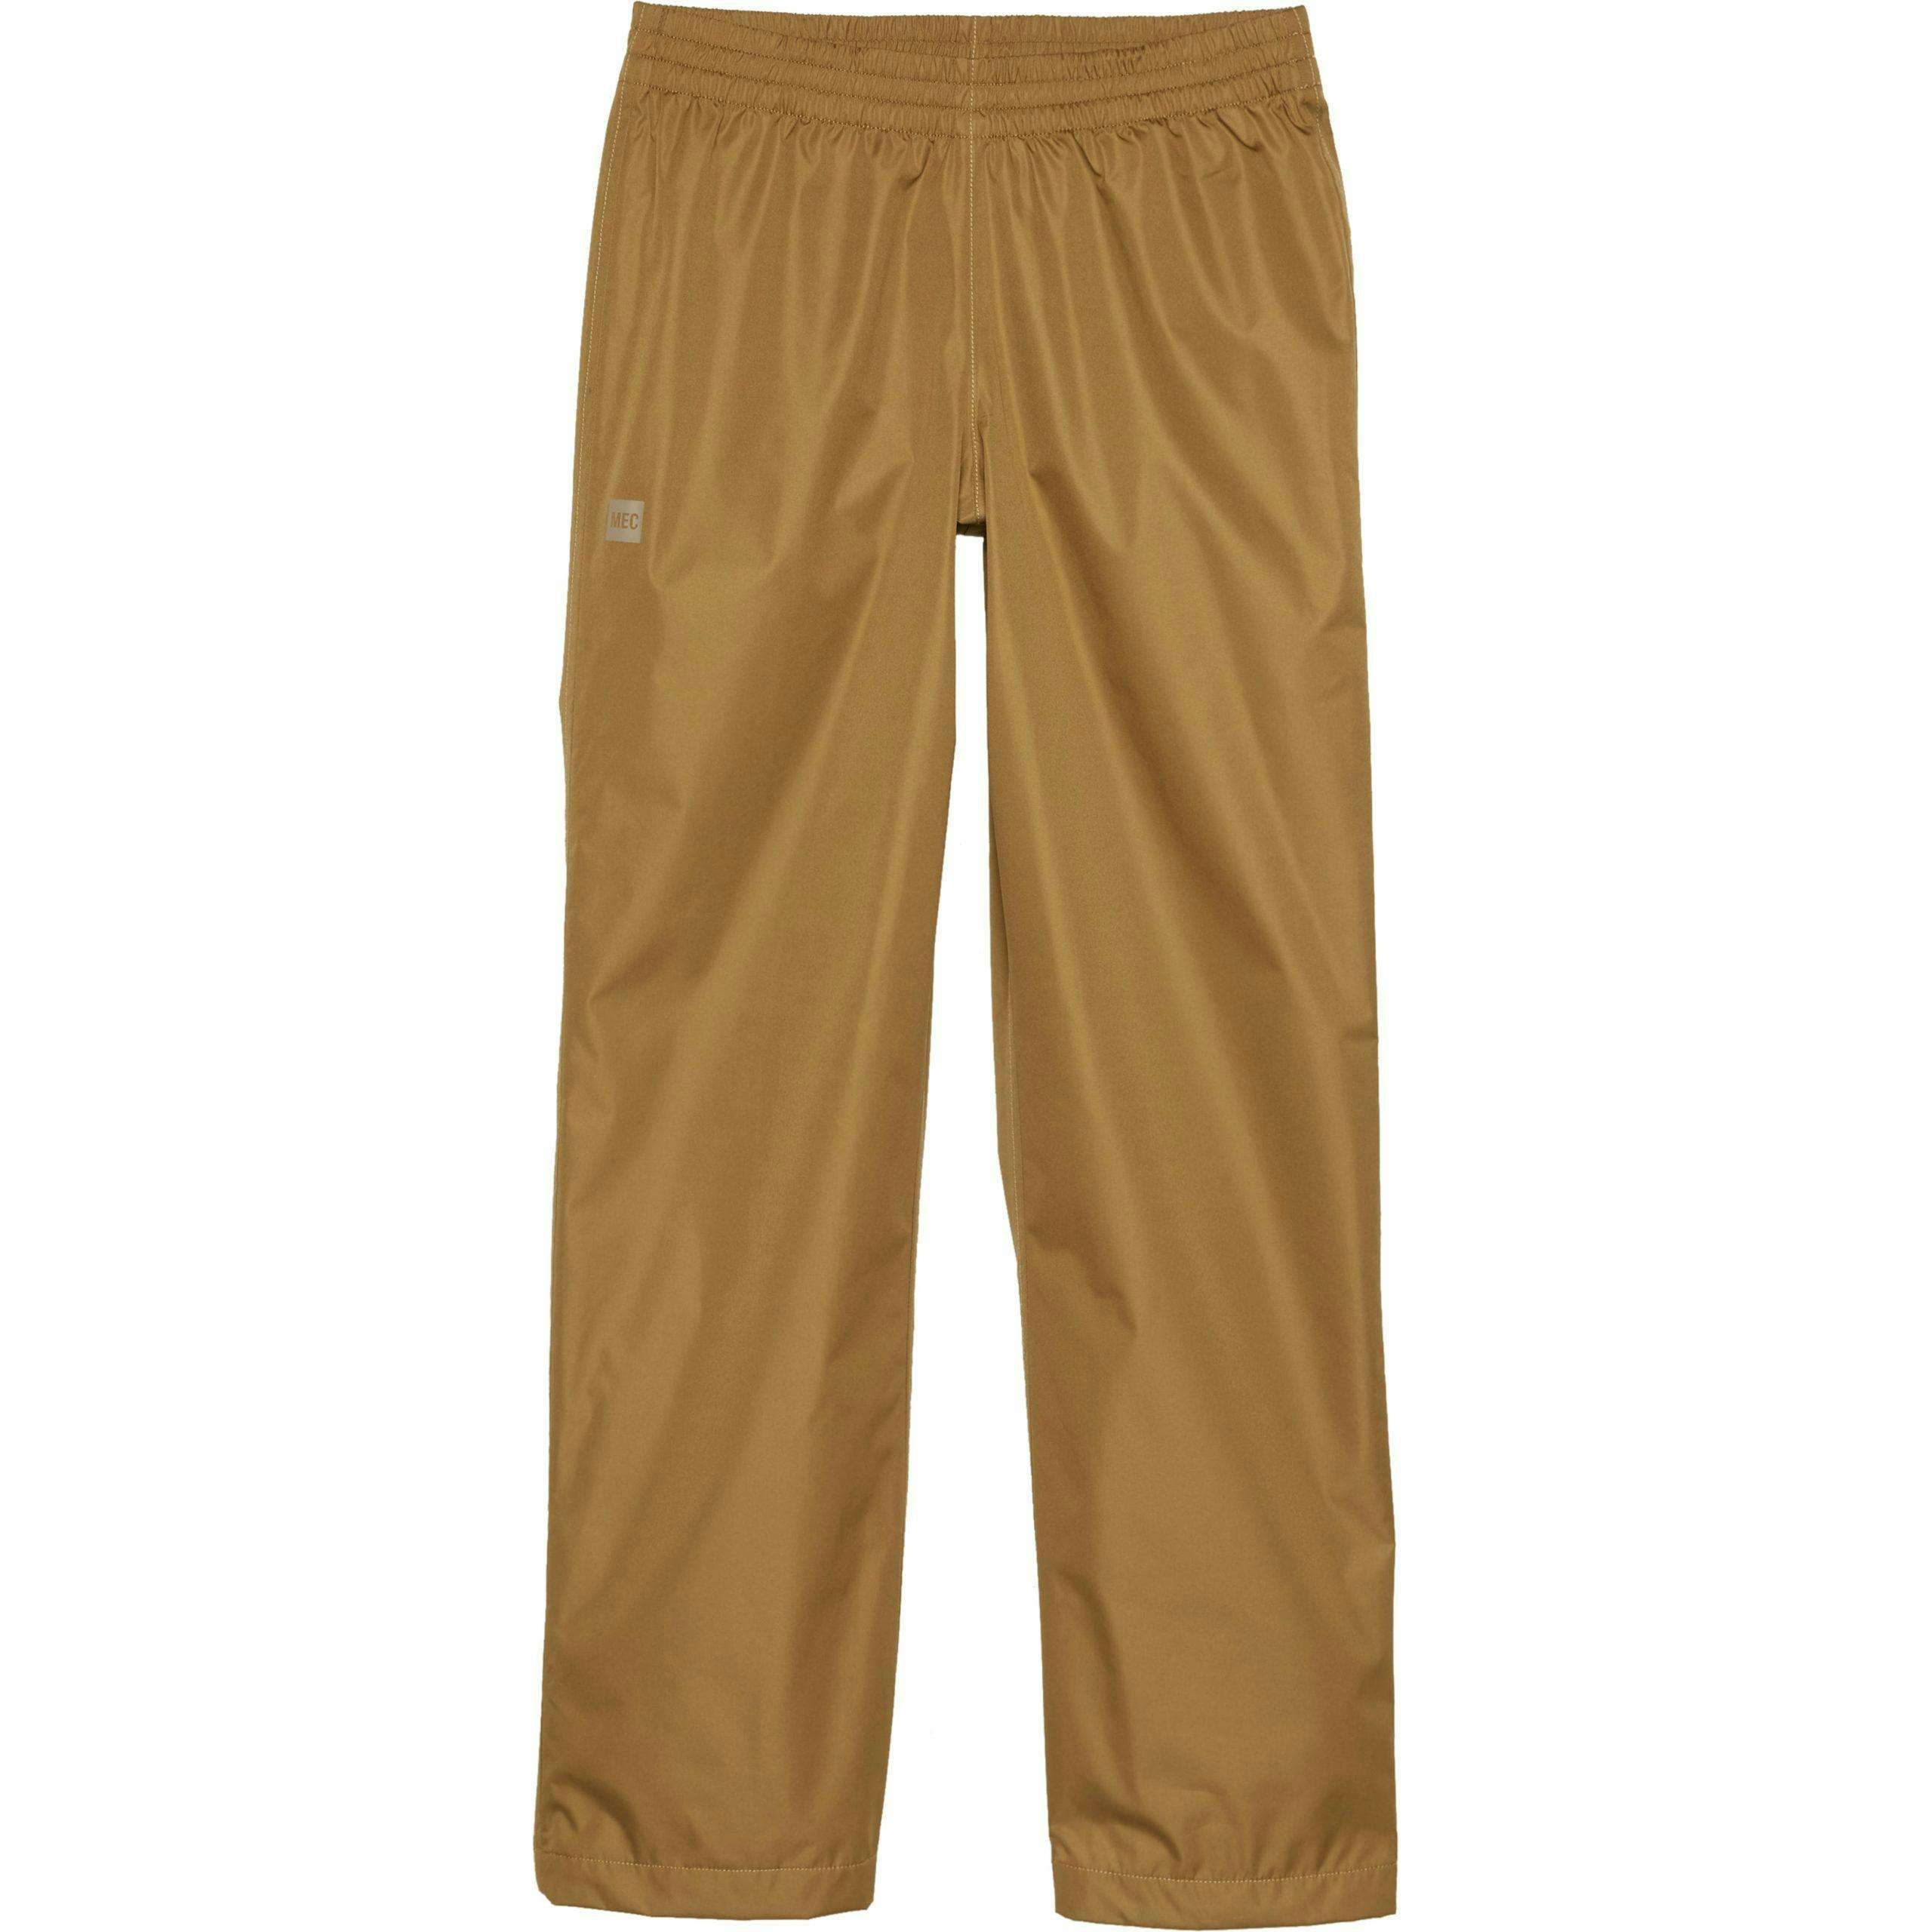 MEC Aquanator pants in camel colour